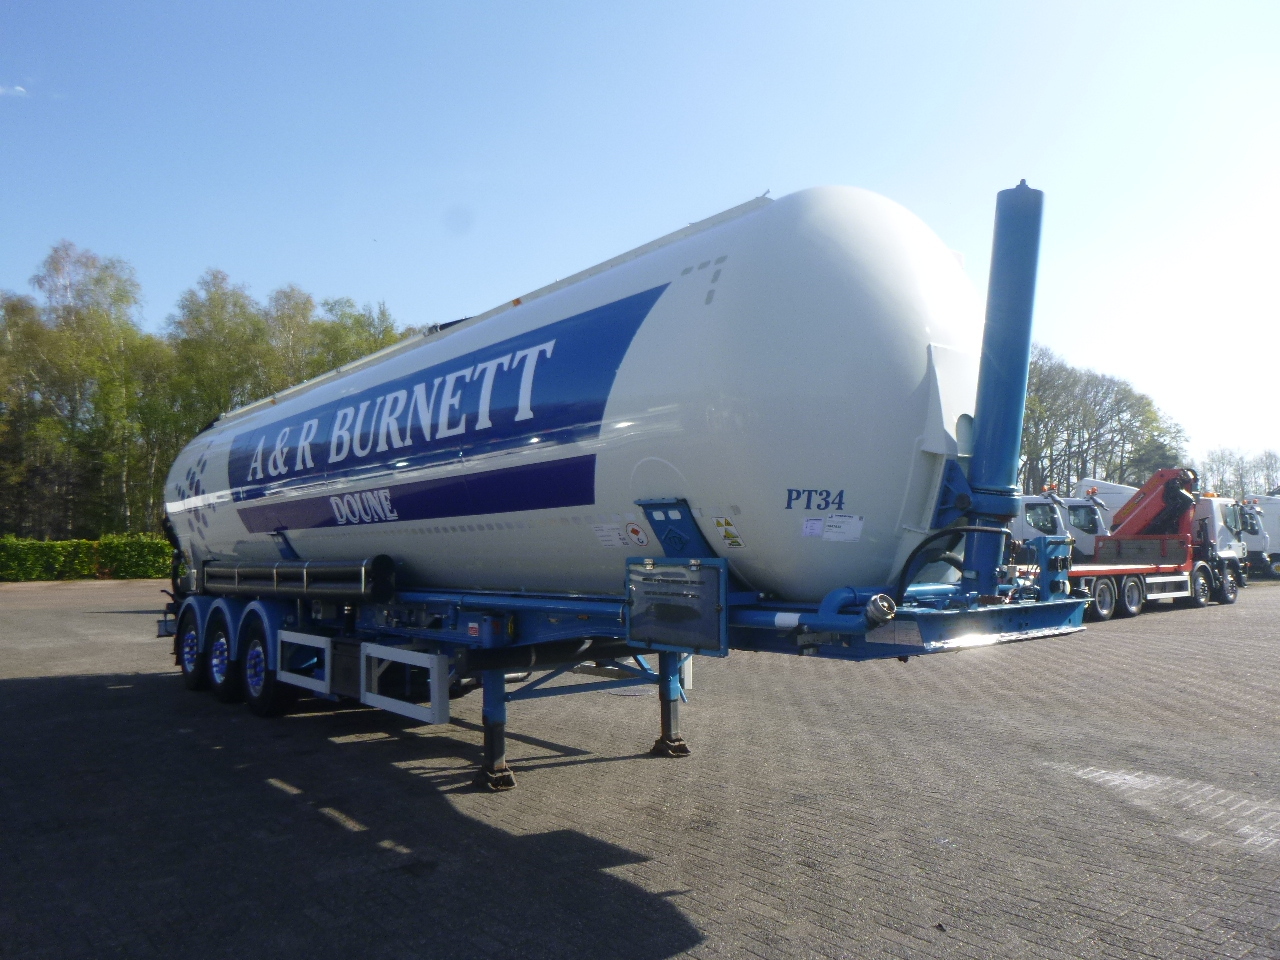 Semirimorchio cisterna per il trasporto di farina Feldbinder Powder tank alu 60 m3 / Compressor diesel engine.: foto 2